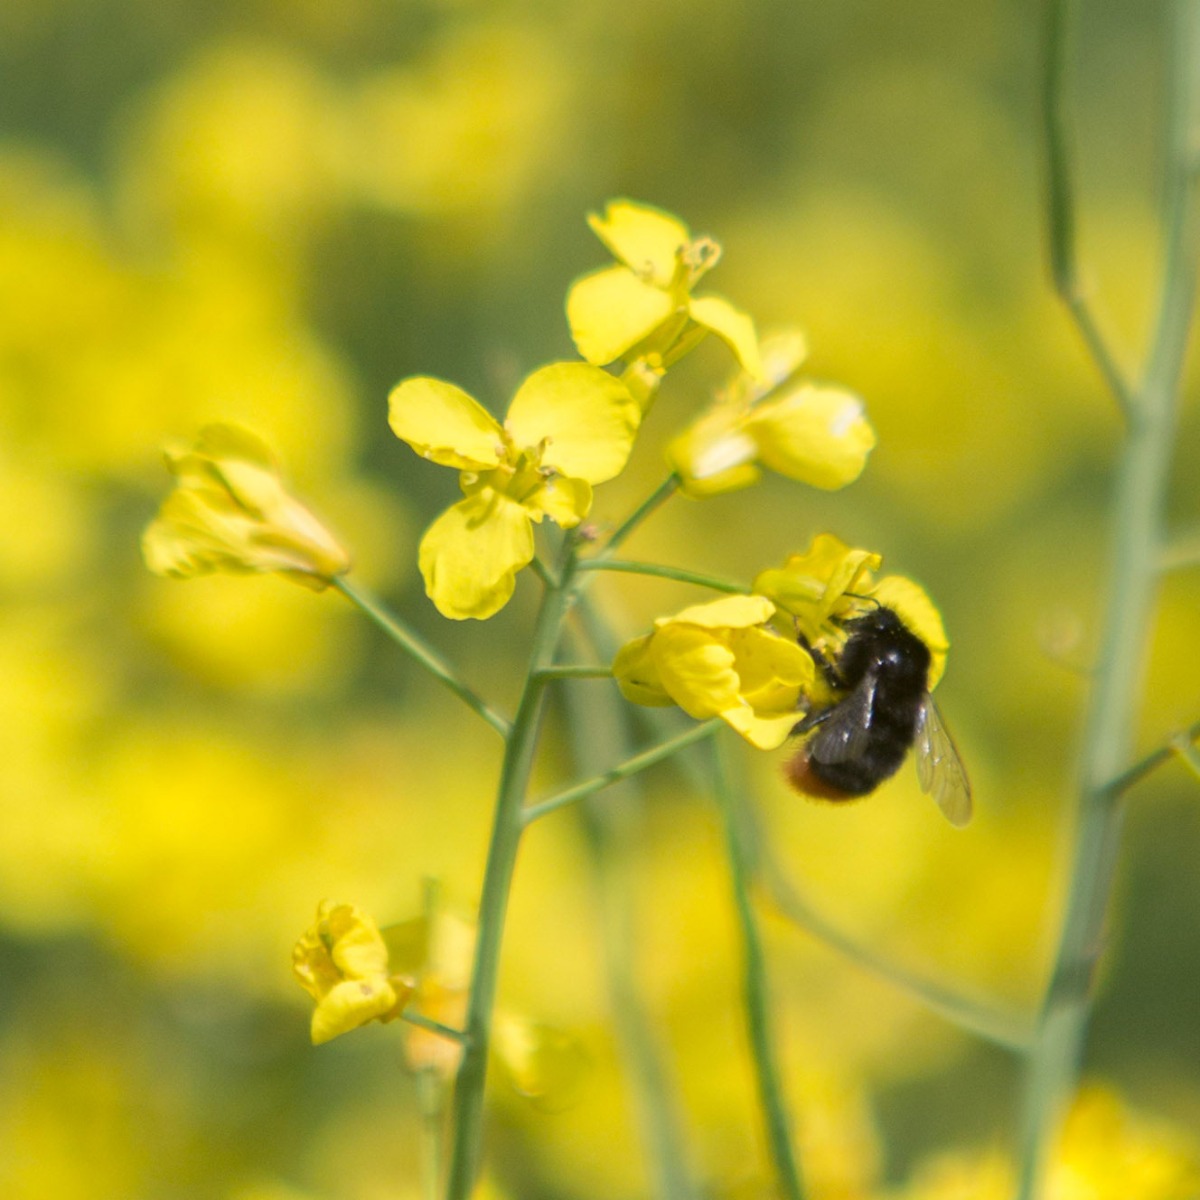 Bee on rapeseed flower